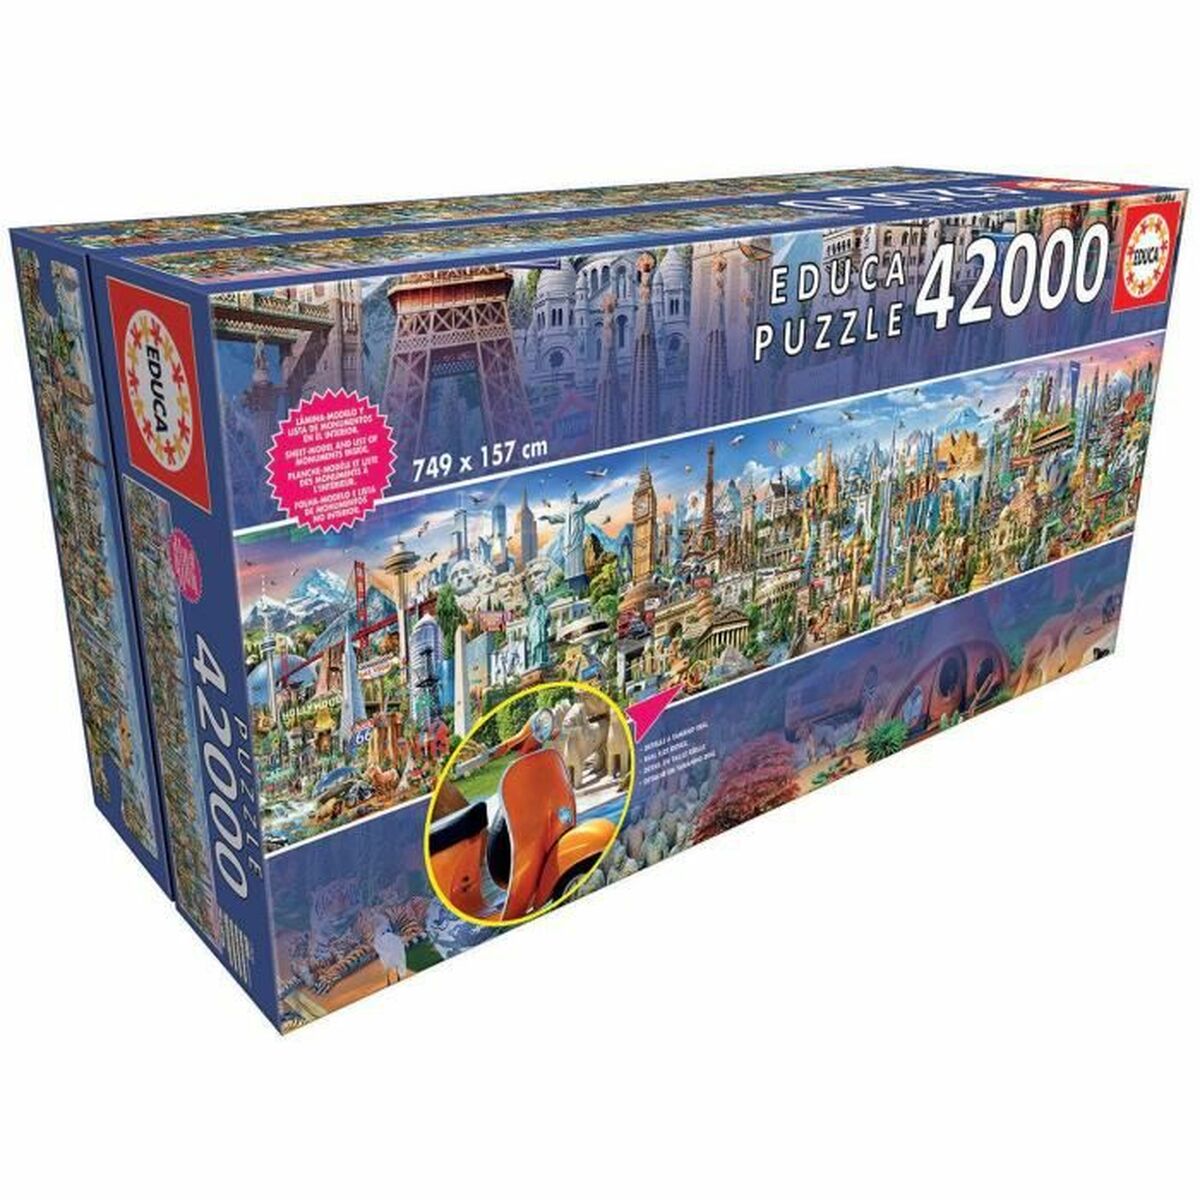 Puzzel Educa 17570 Around the World 42000 Onderdelen 749 x 157 cm